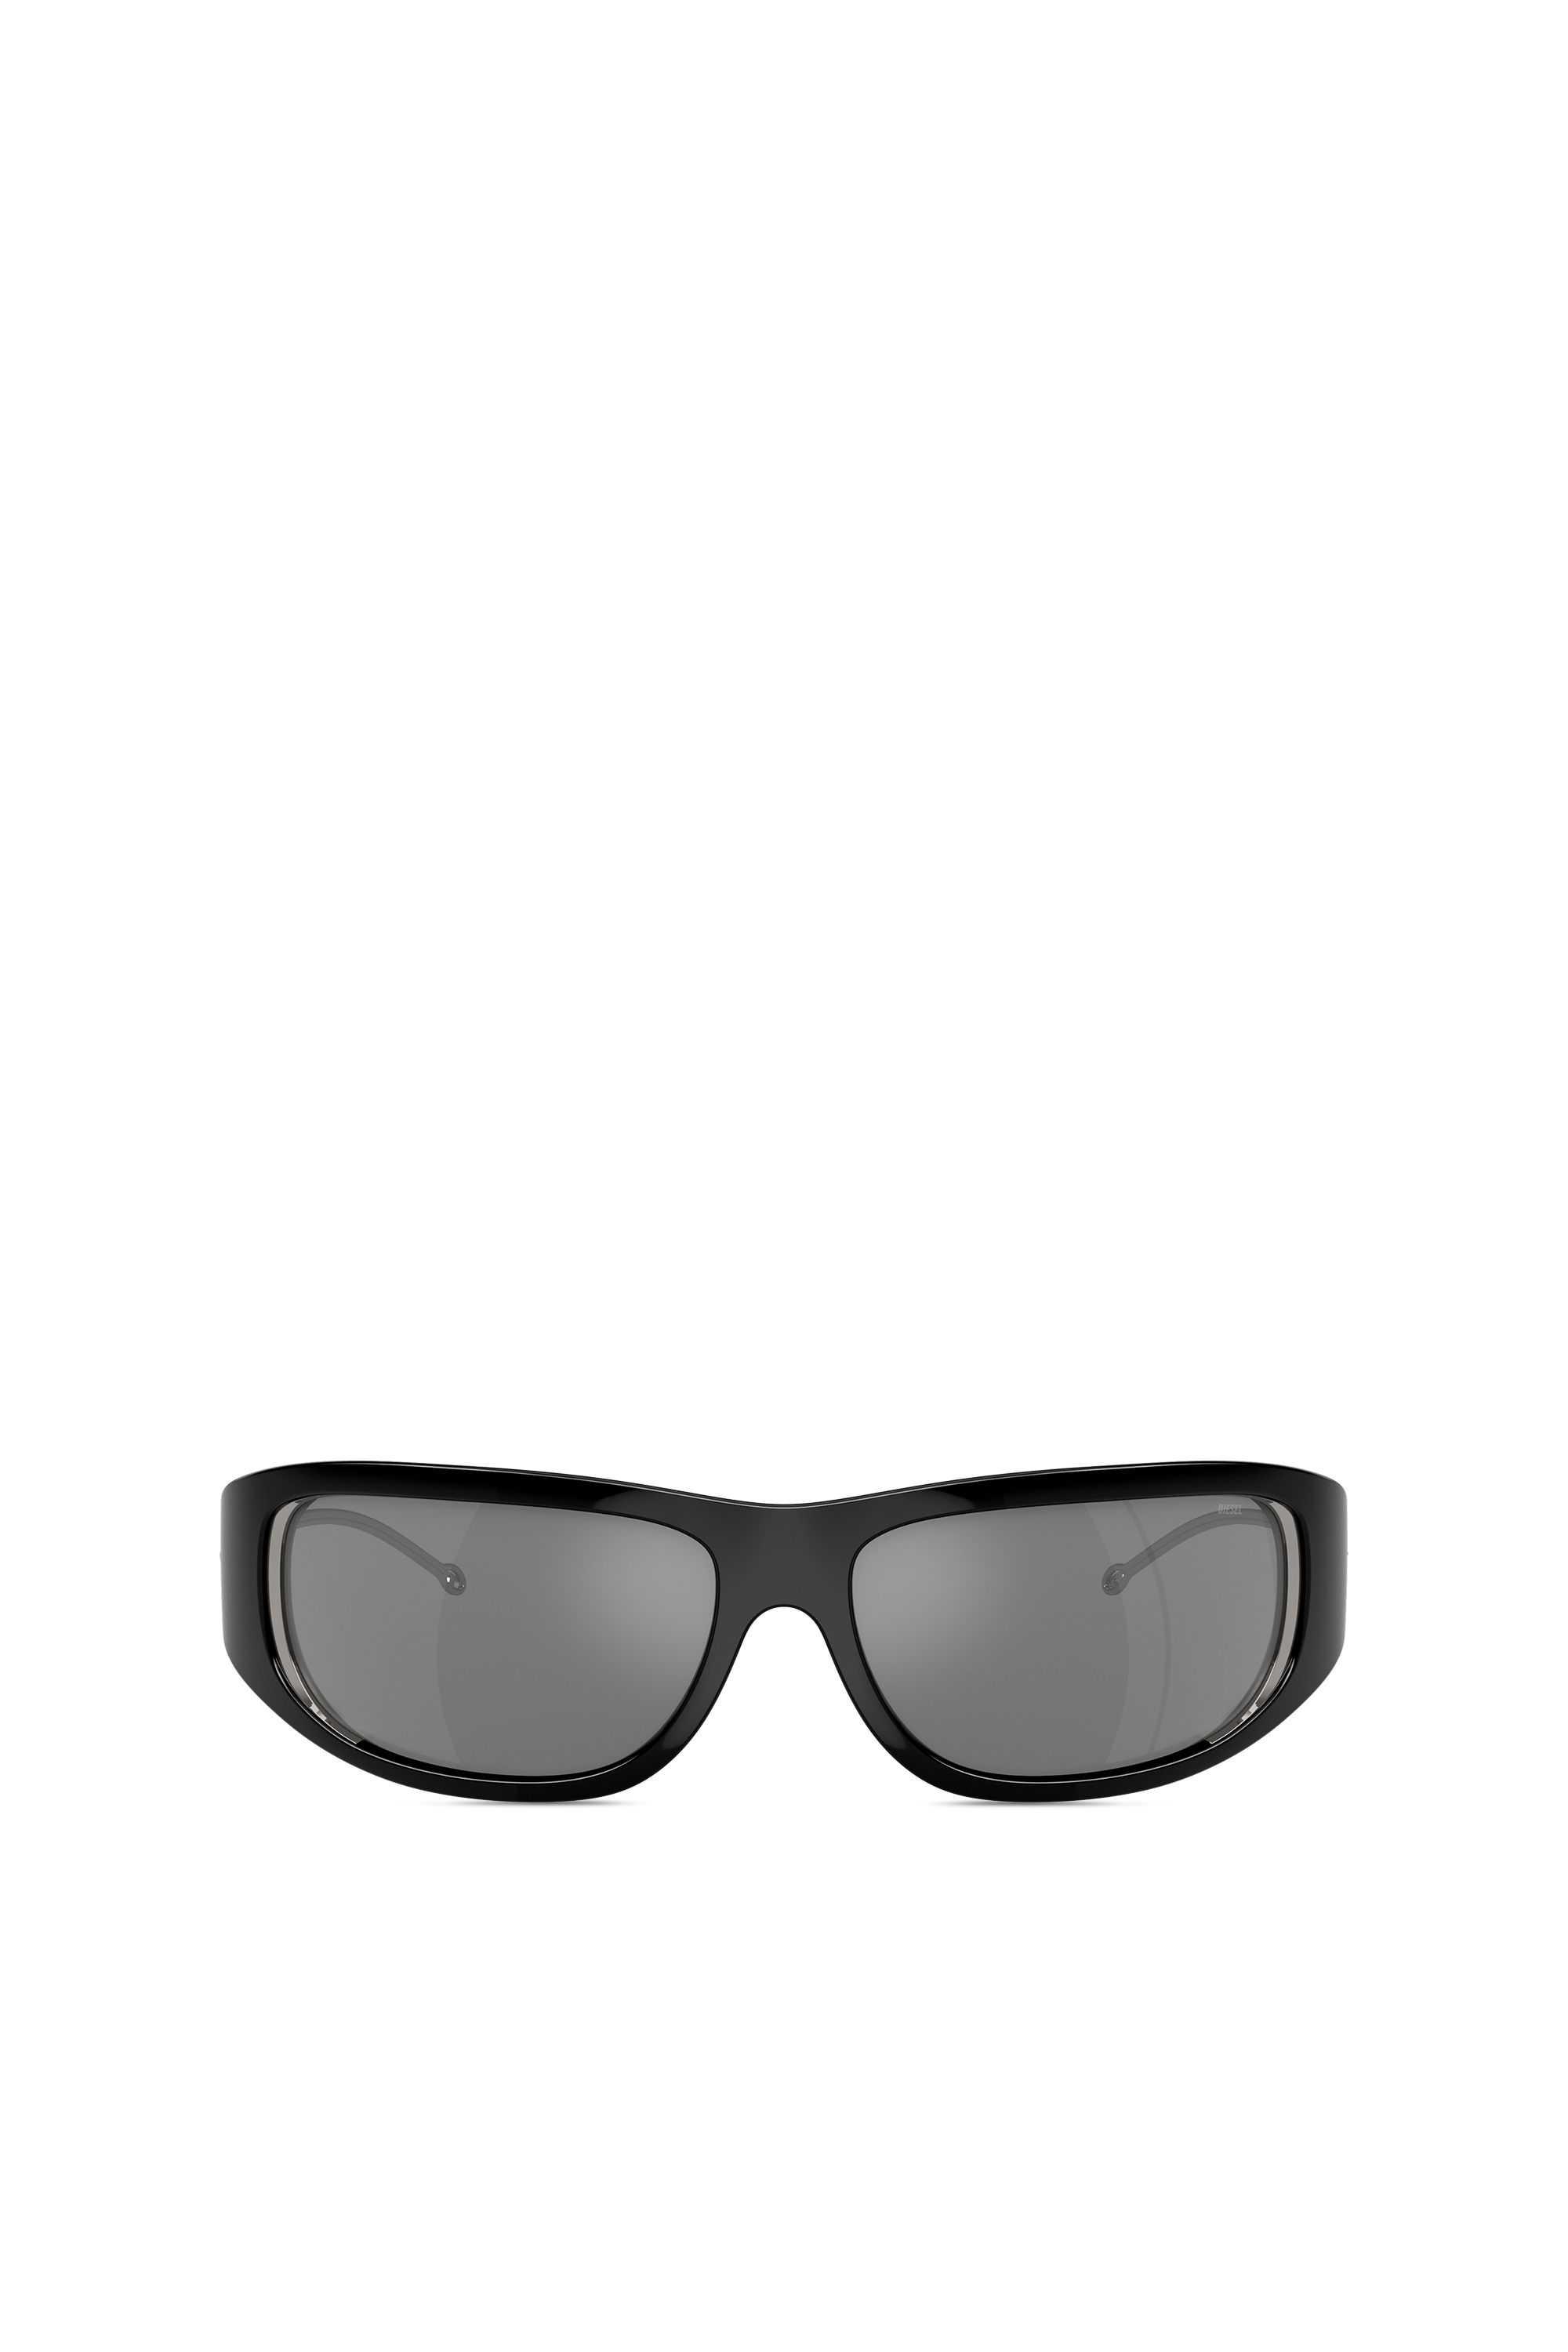 Diesel - Gafas con estilo envolvente - Gafas de sol - Unisex - Negro